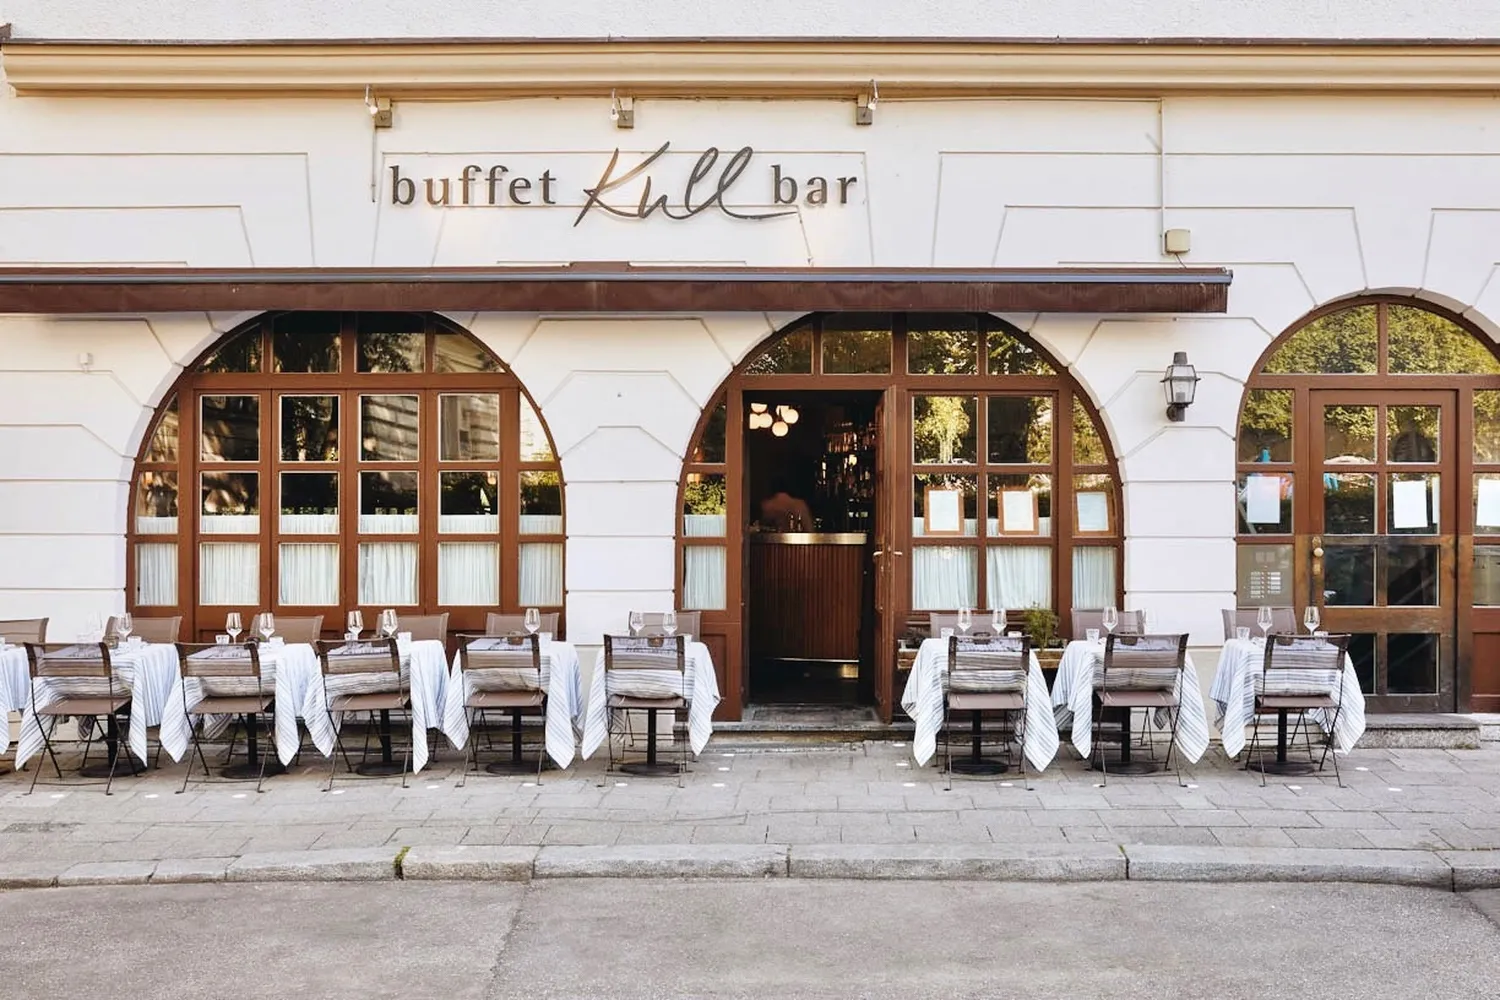 Buffet Kull Bar Munich